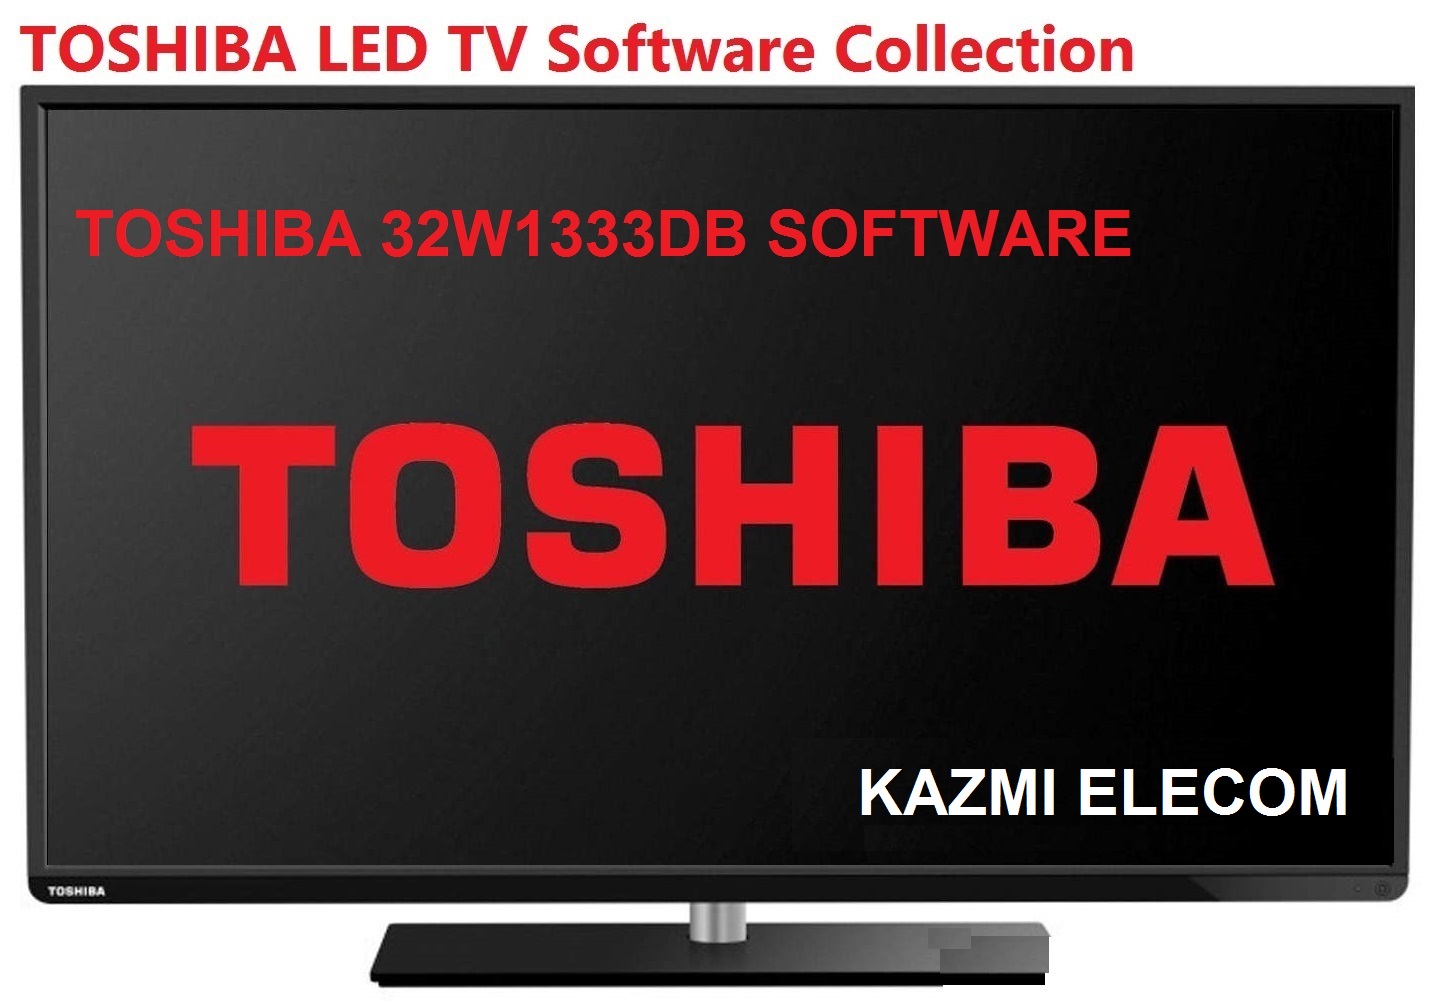 Toshiba 32W1333Db